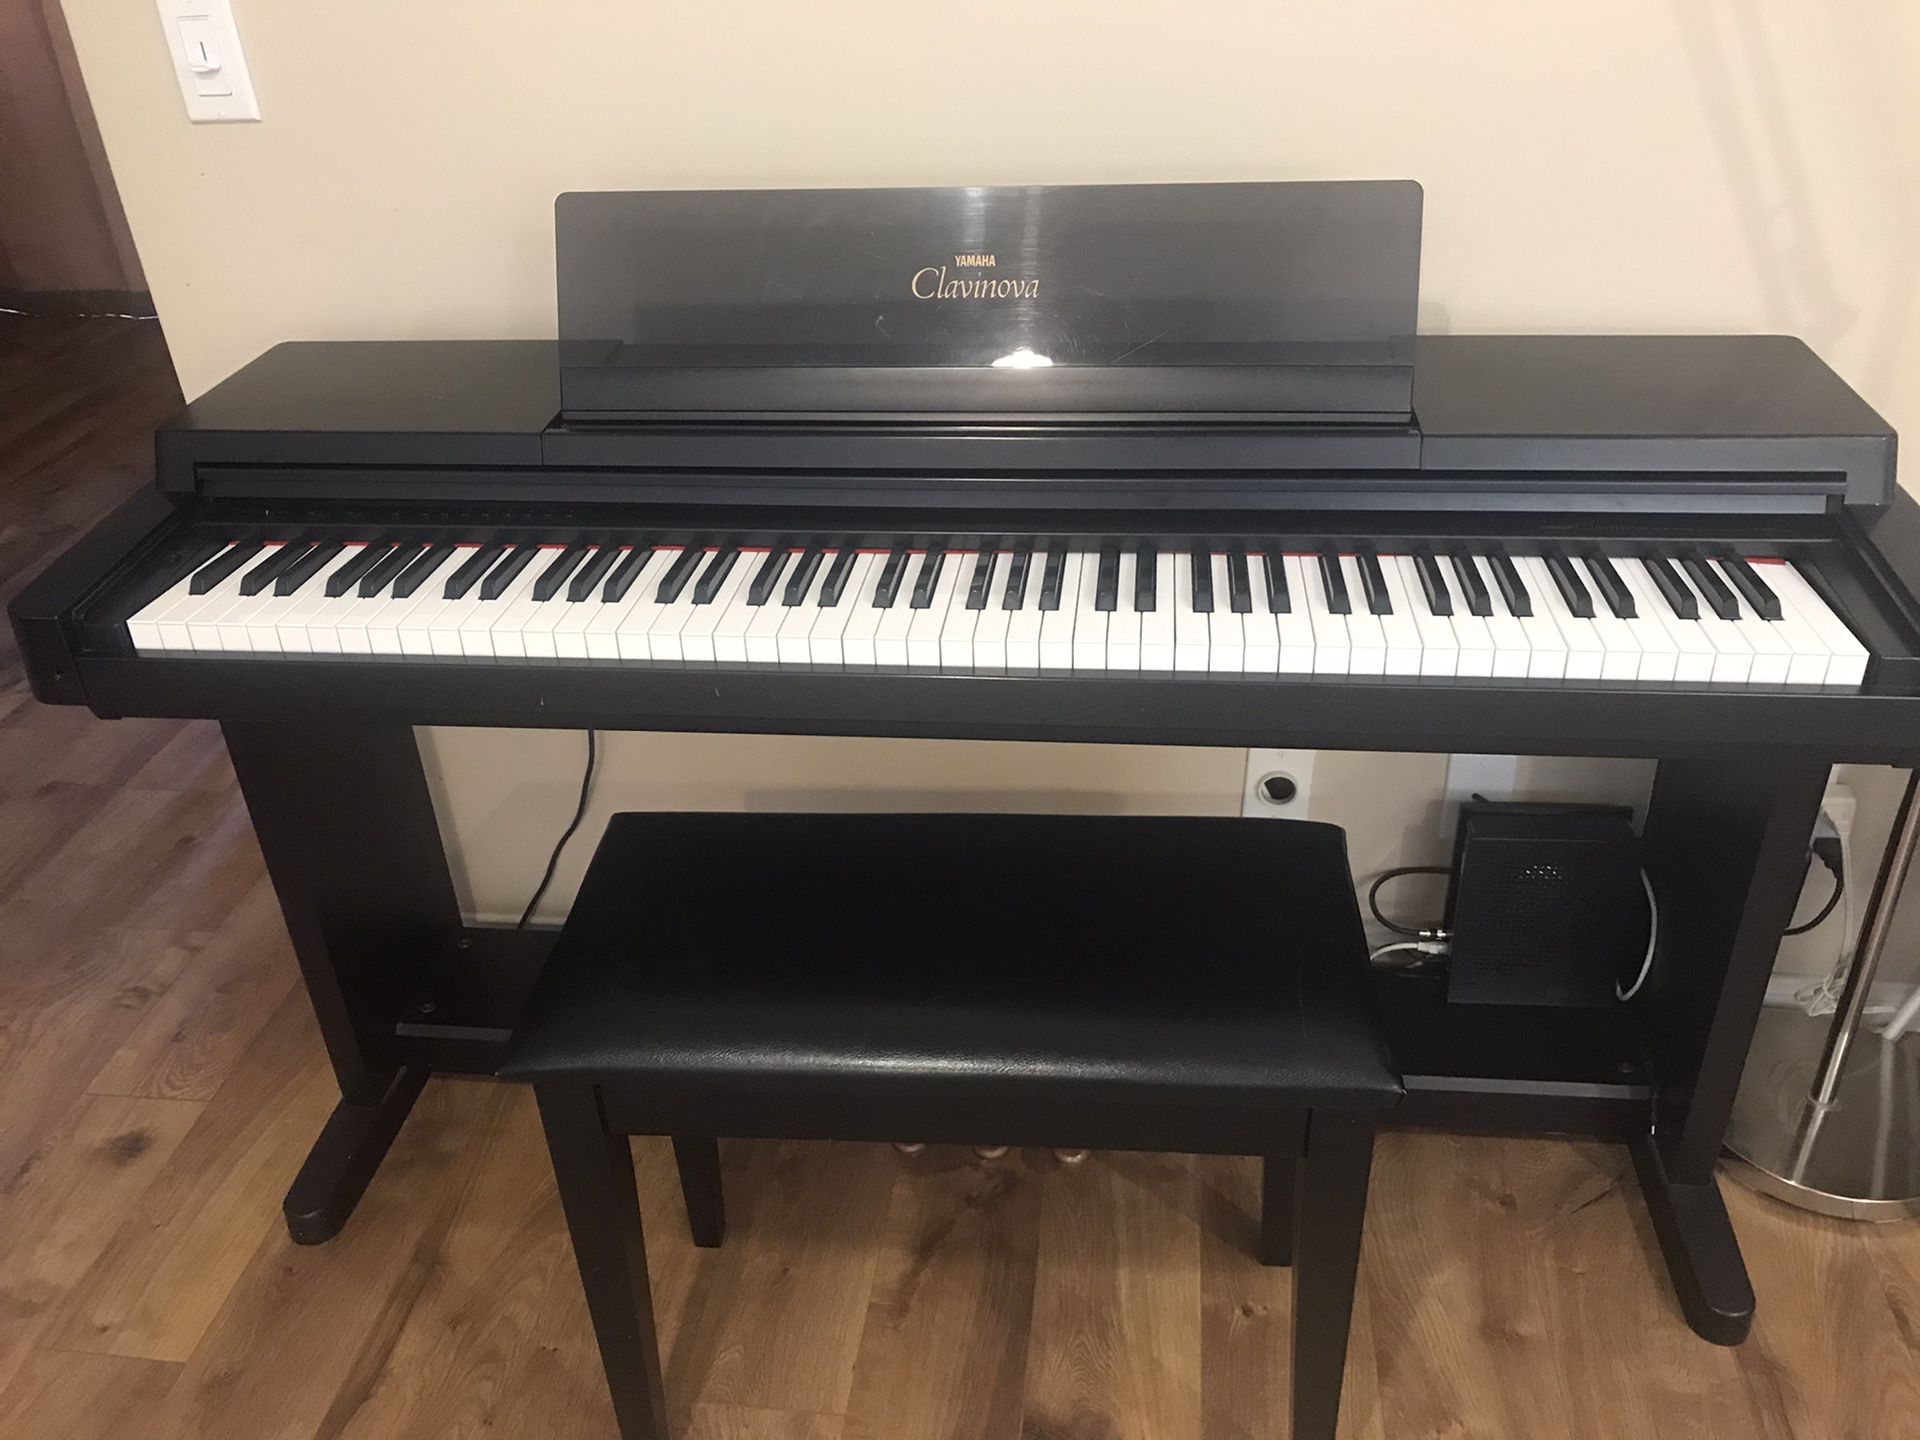 Yamaha Clavinova Digital Piano w/ Bench